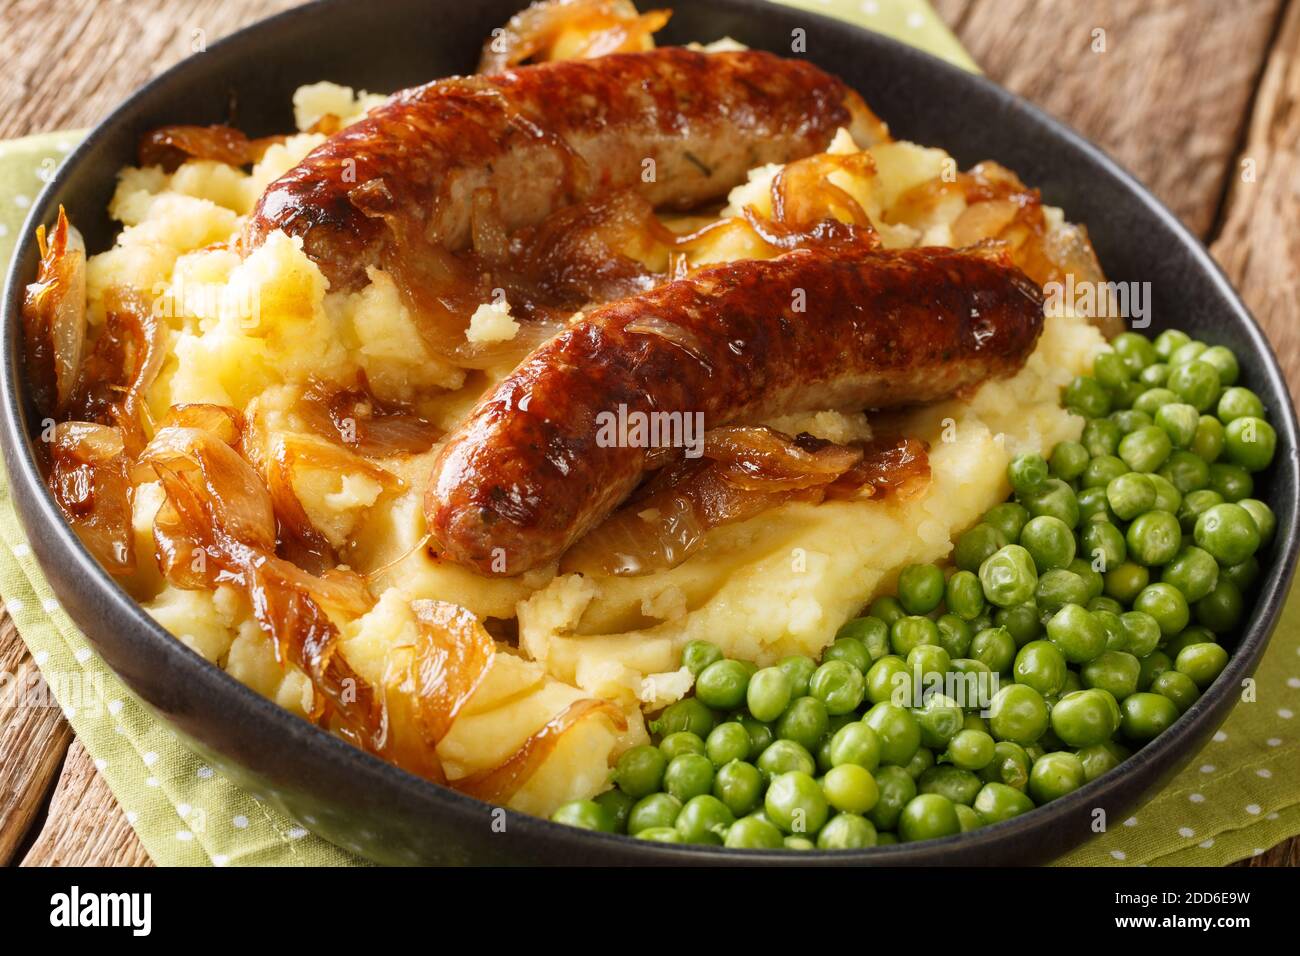 Irish Bangers and Mash ist ein Gericht, bestehend aus Würstchen mit Kartoffelpüree und Zwiebelsoße in der Nähe in der Platte auf dem Tisch serviert. Horizontal Stockfoto